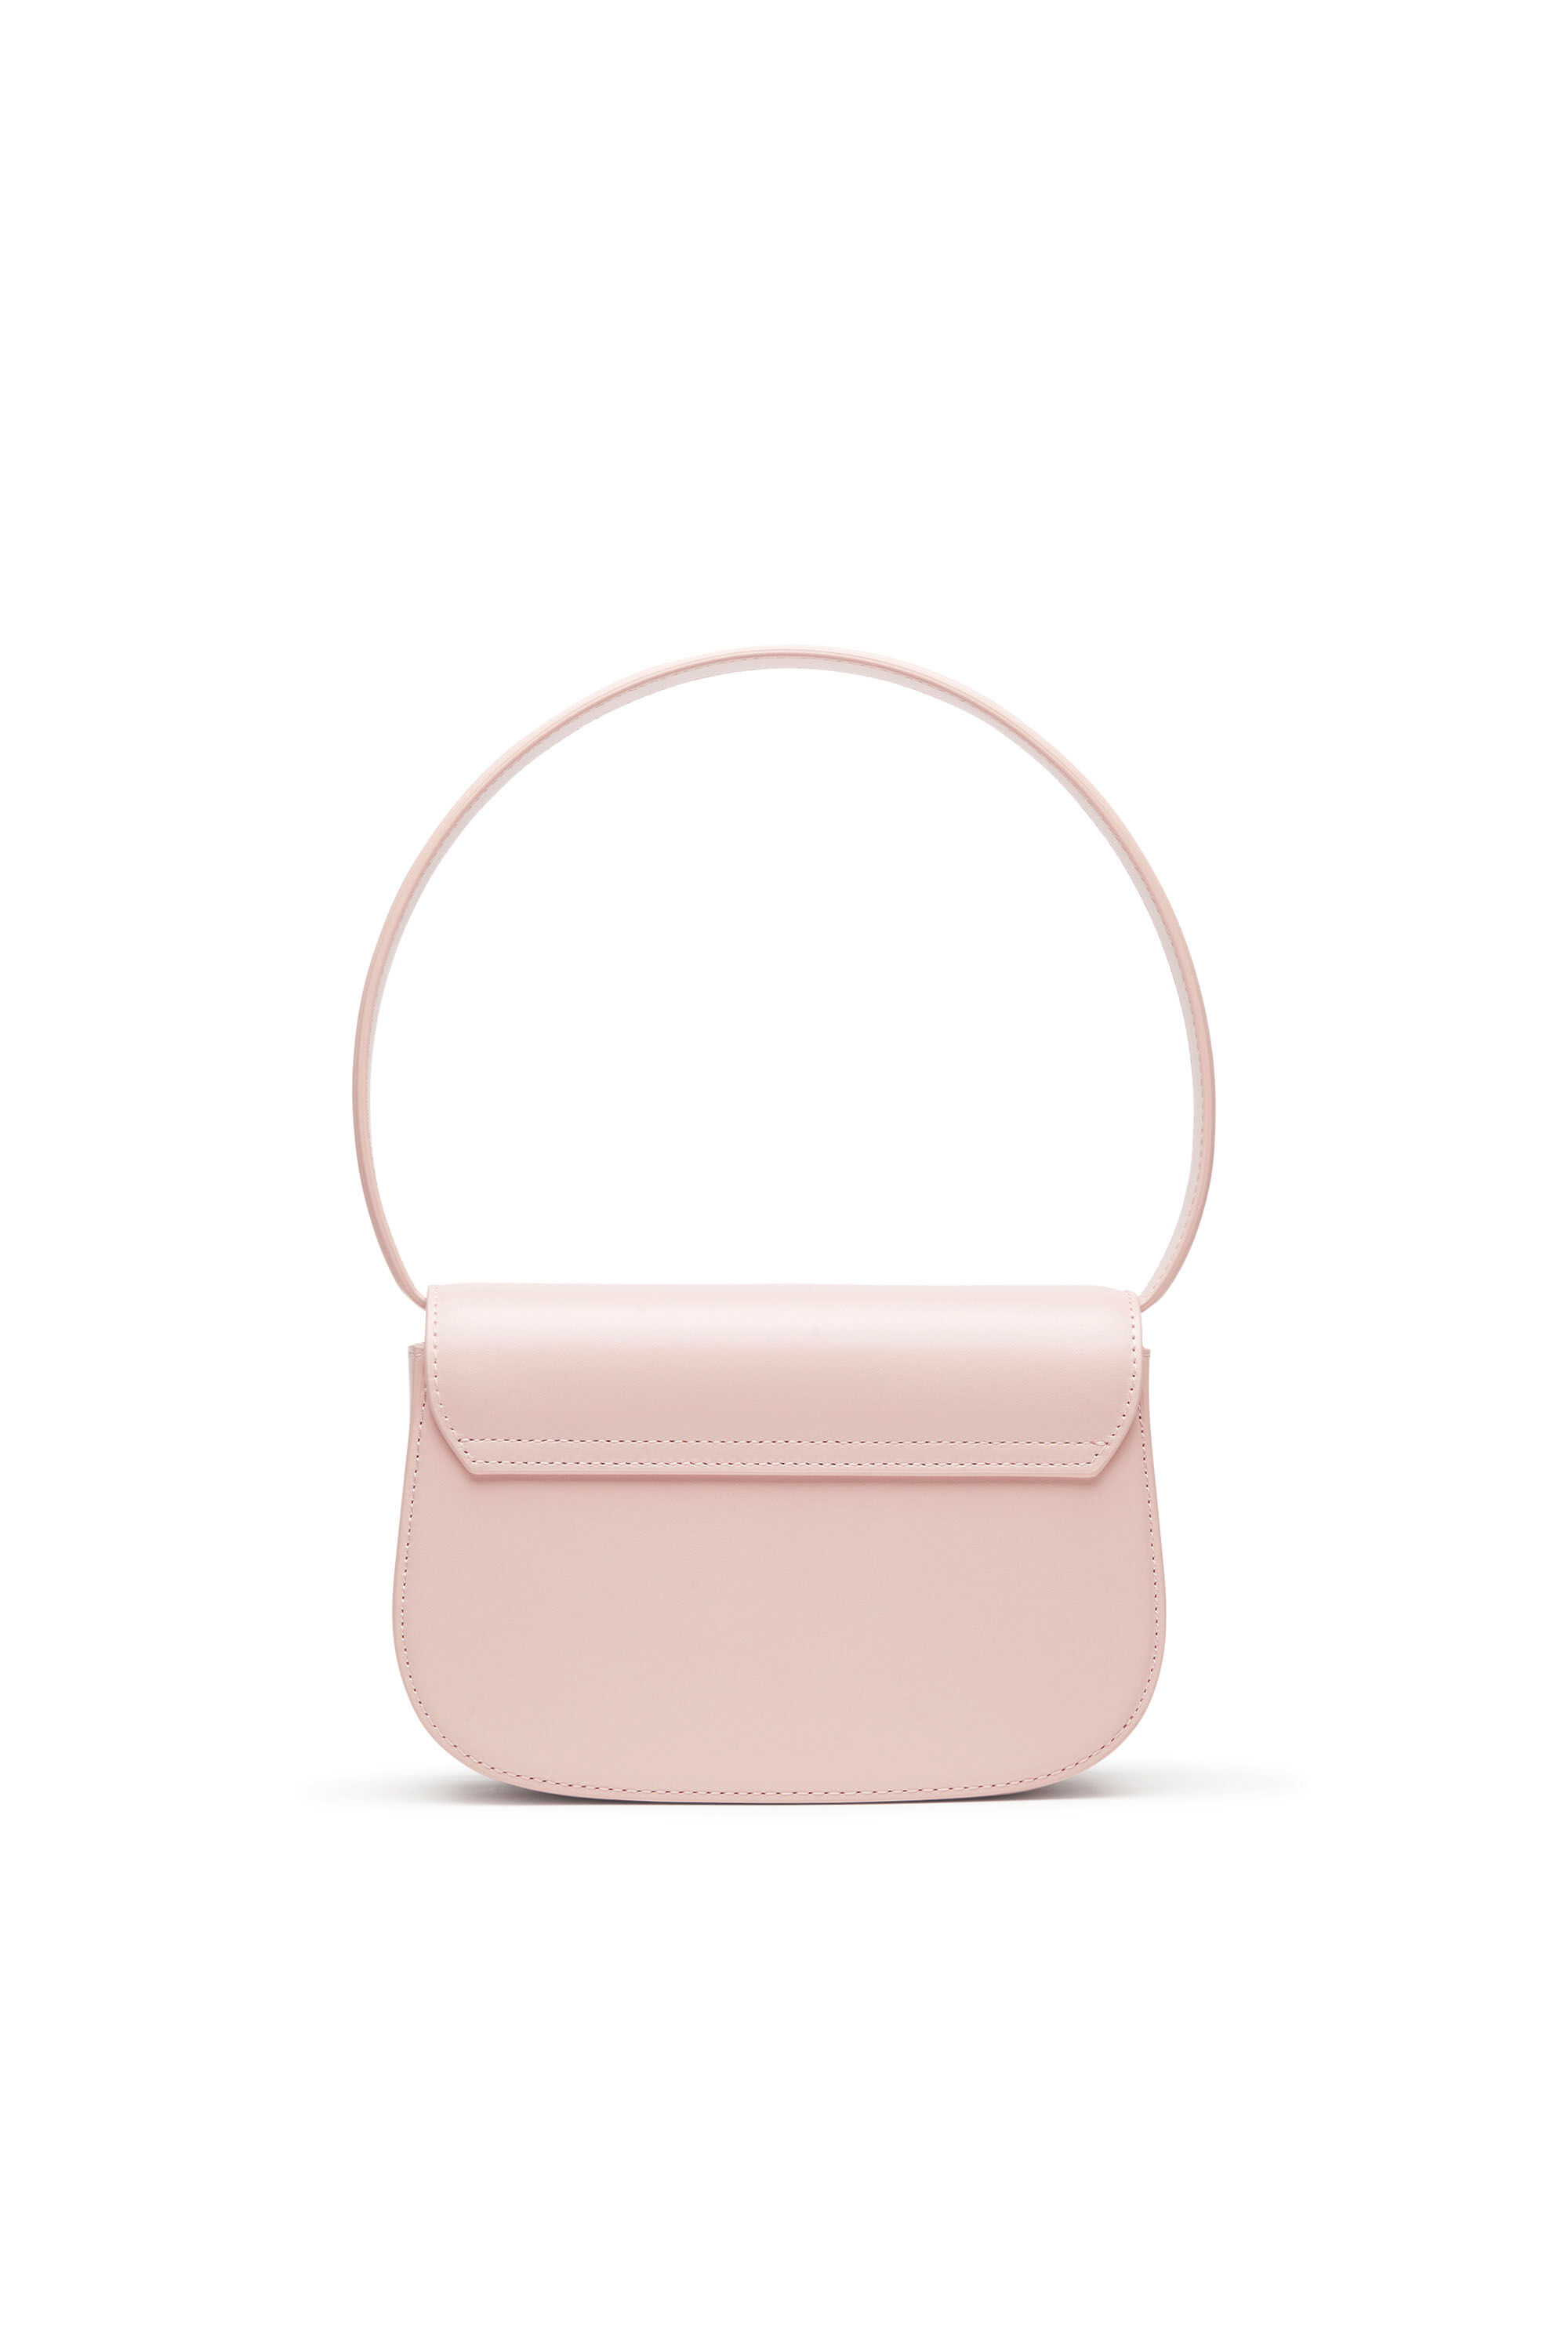 1DR 1DR - Iconic shoulder bag in pastel leather｜ピンク 